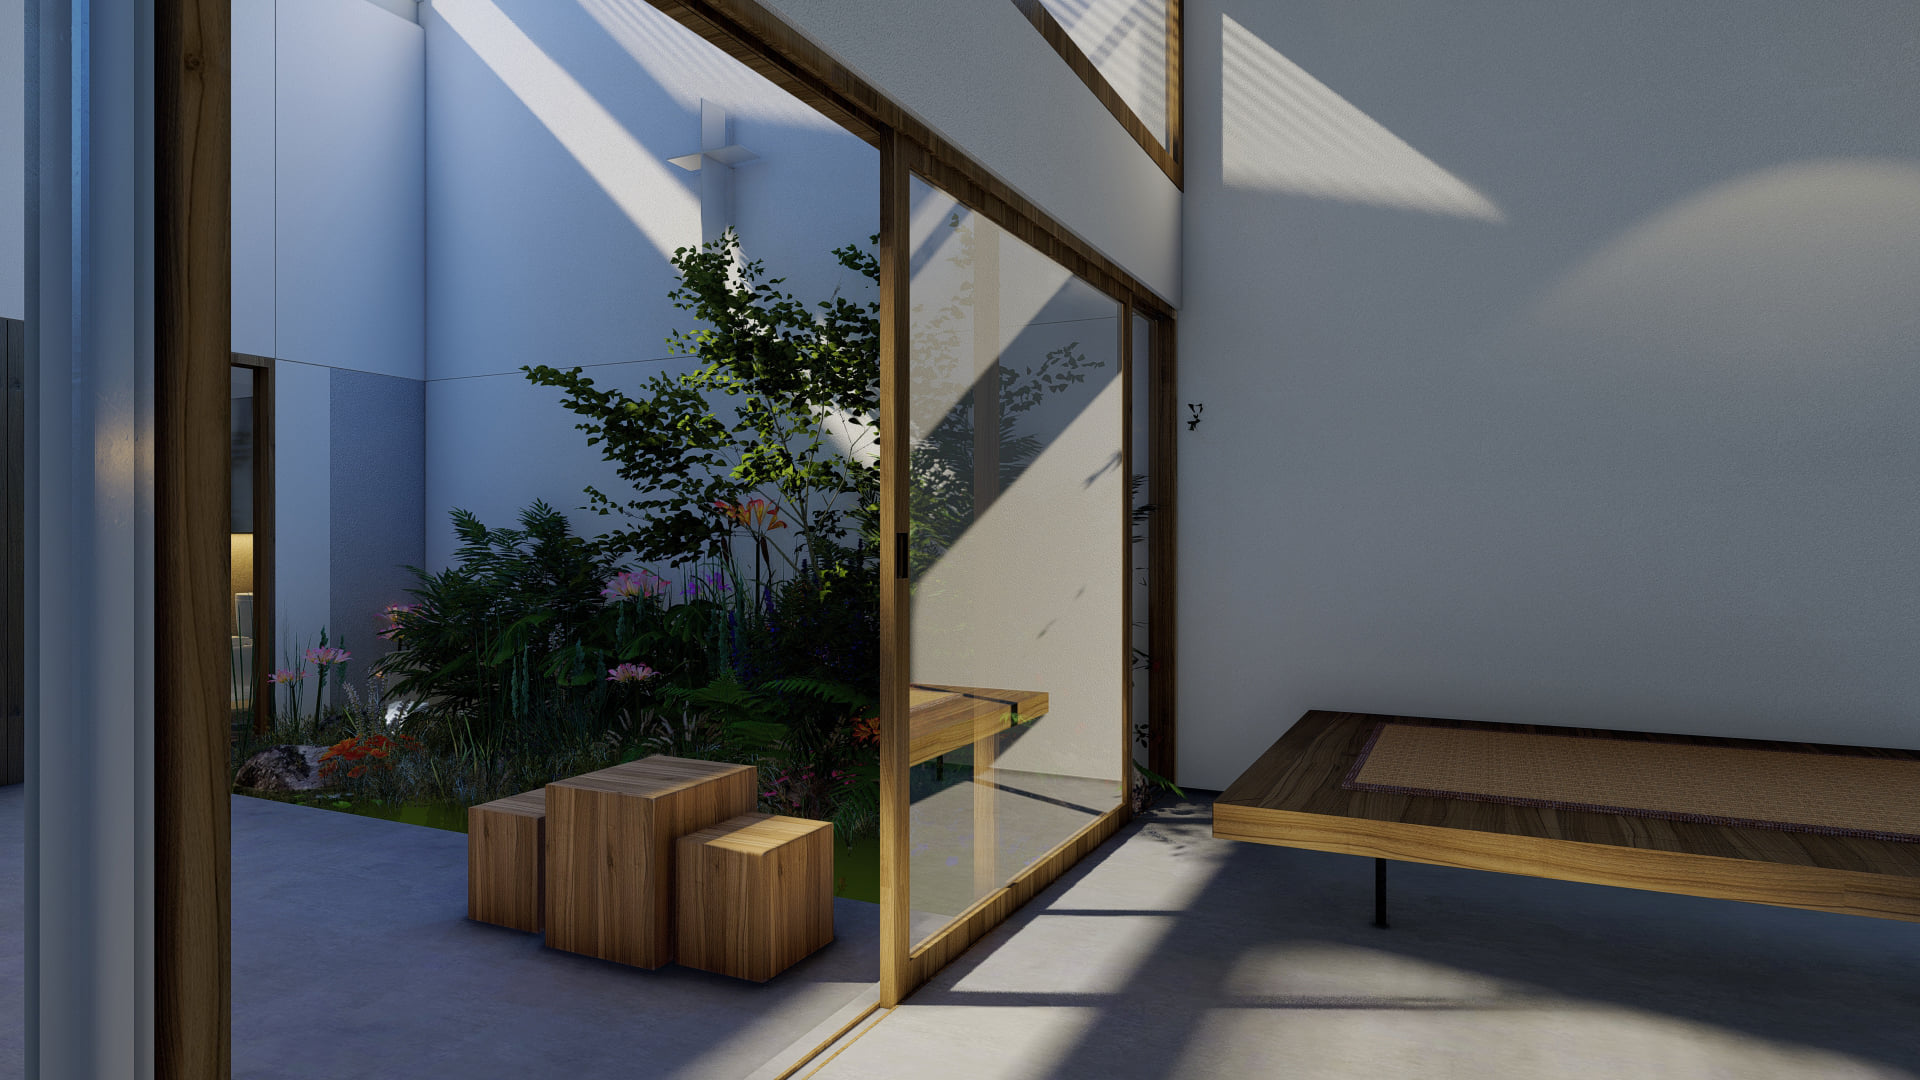 Căn nhà được thiết kế đơn giản với không gian mở ở tất cả mọi góc đều có thể ngắm được không gian bên ngoài